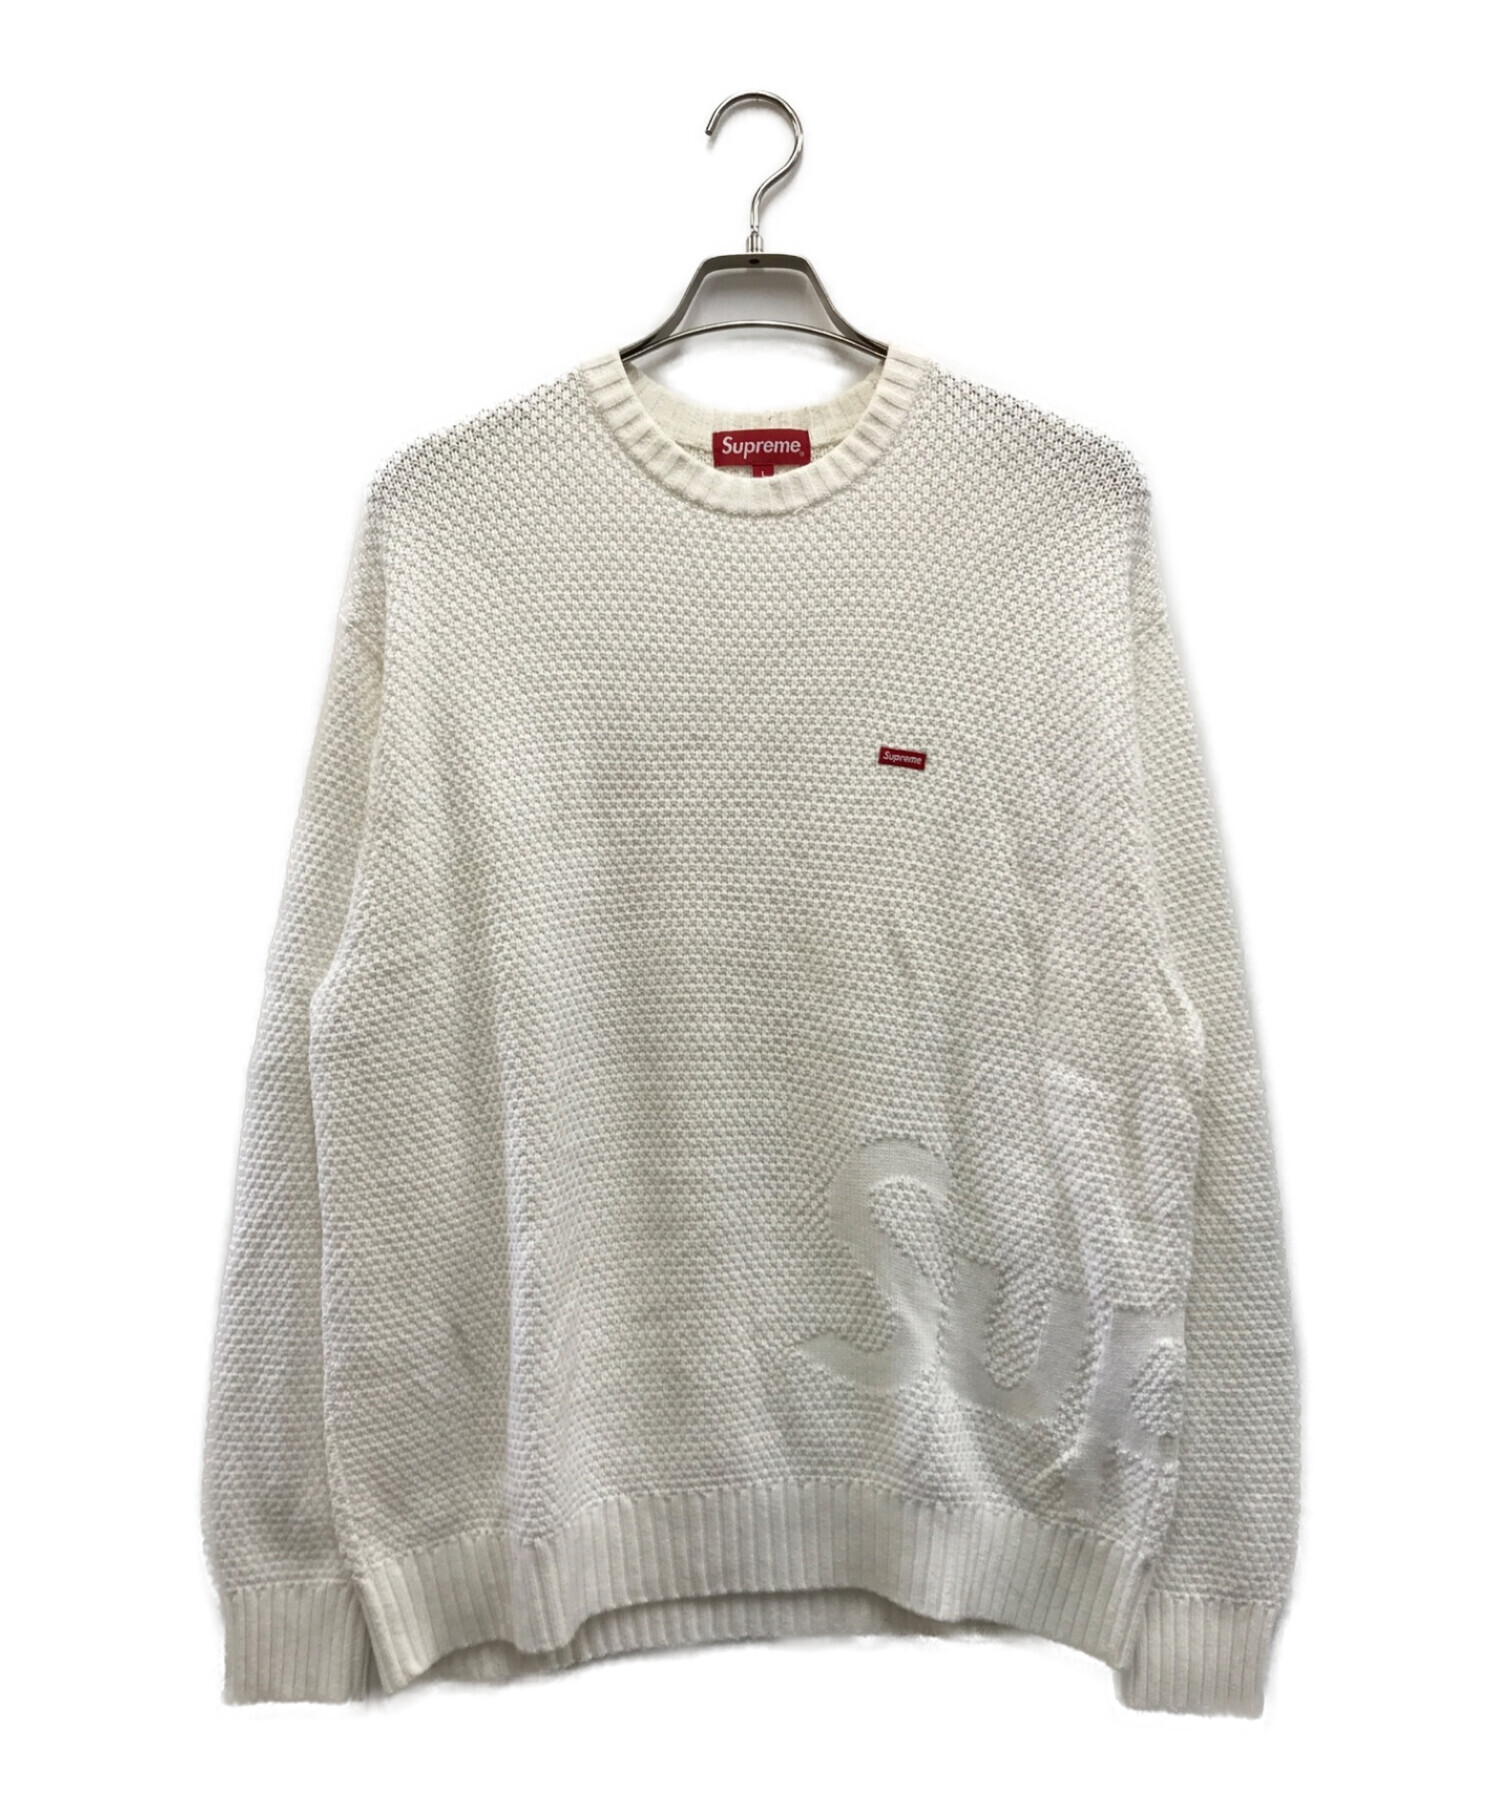 Supreme Textured Small Box Sweater L